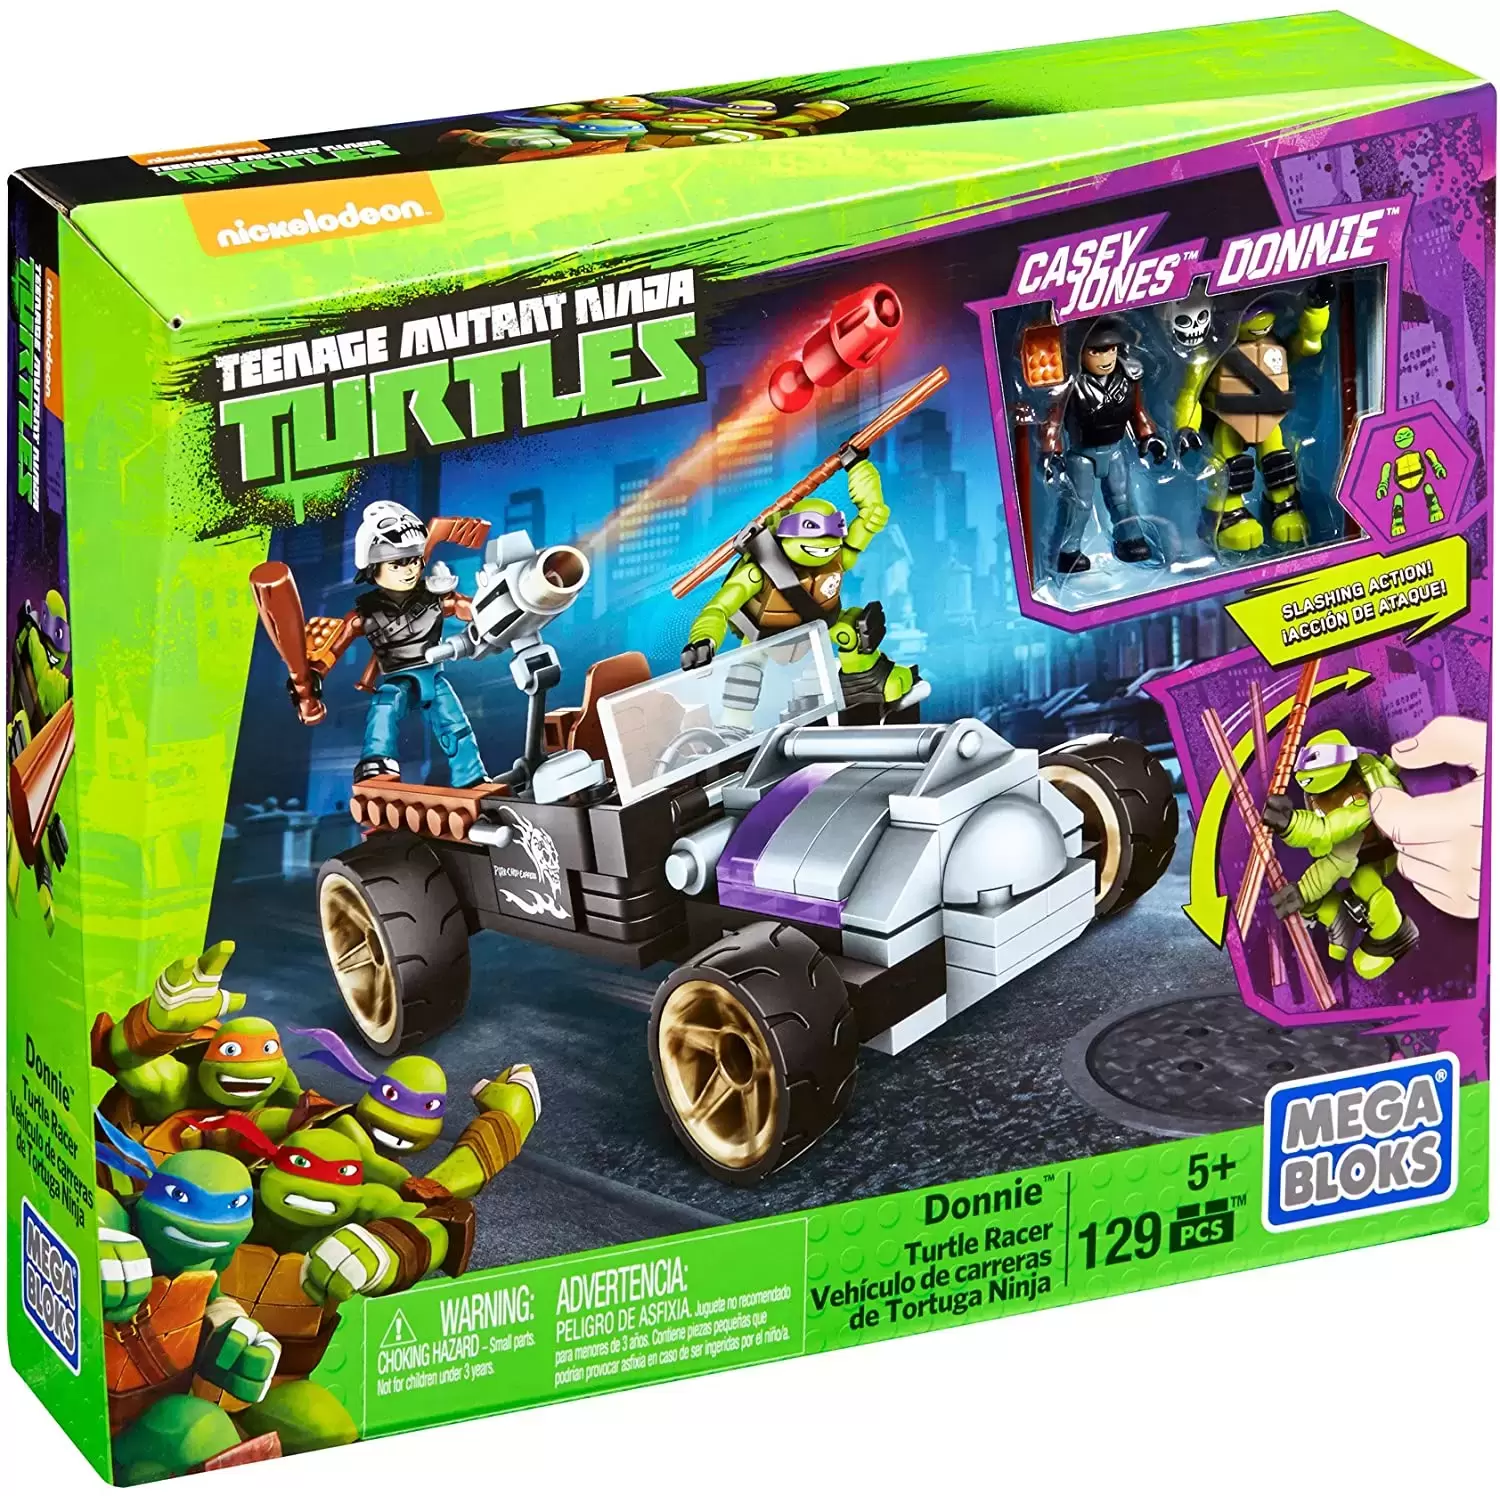 Teenage Mutant Ninja Turtles Mega Bloks - Donnie Turtle Racer